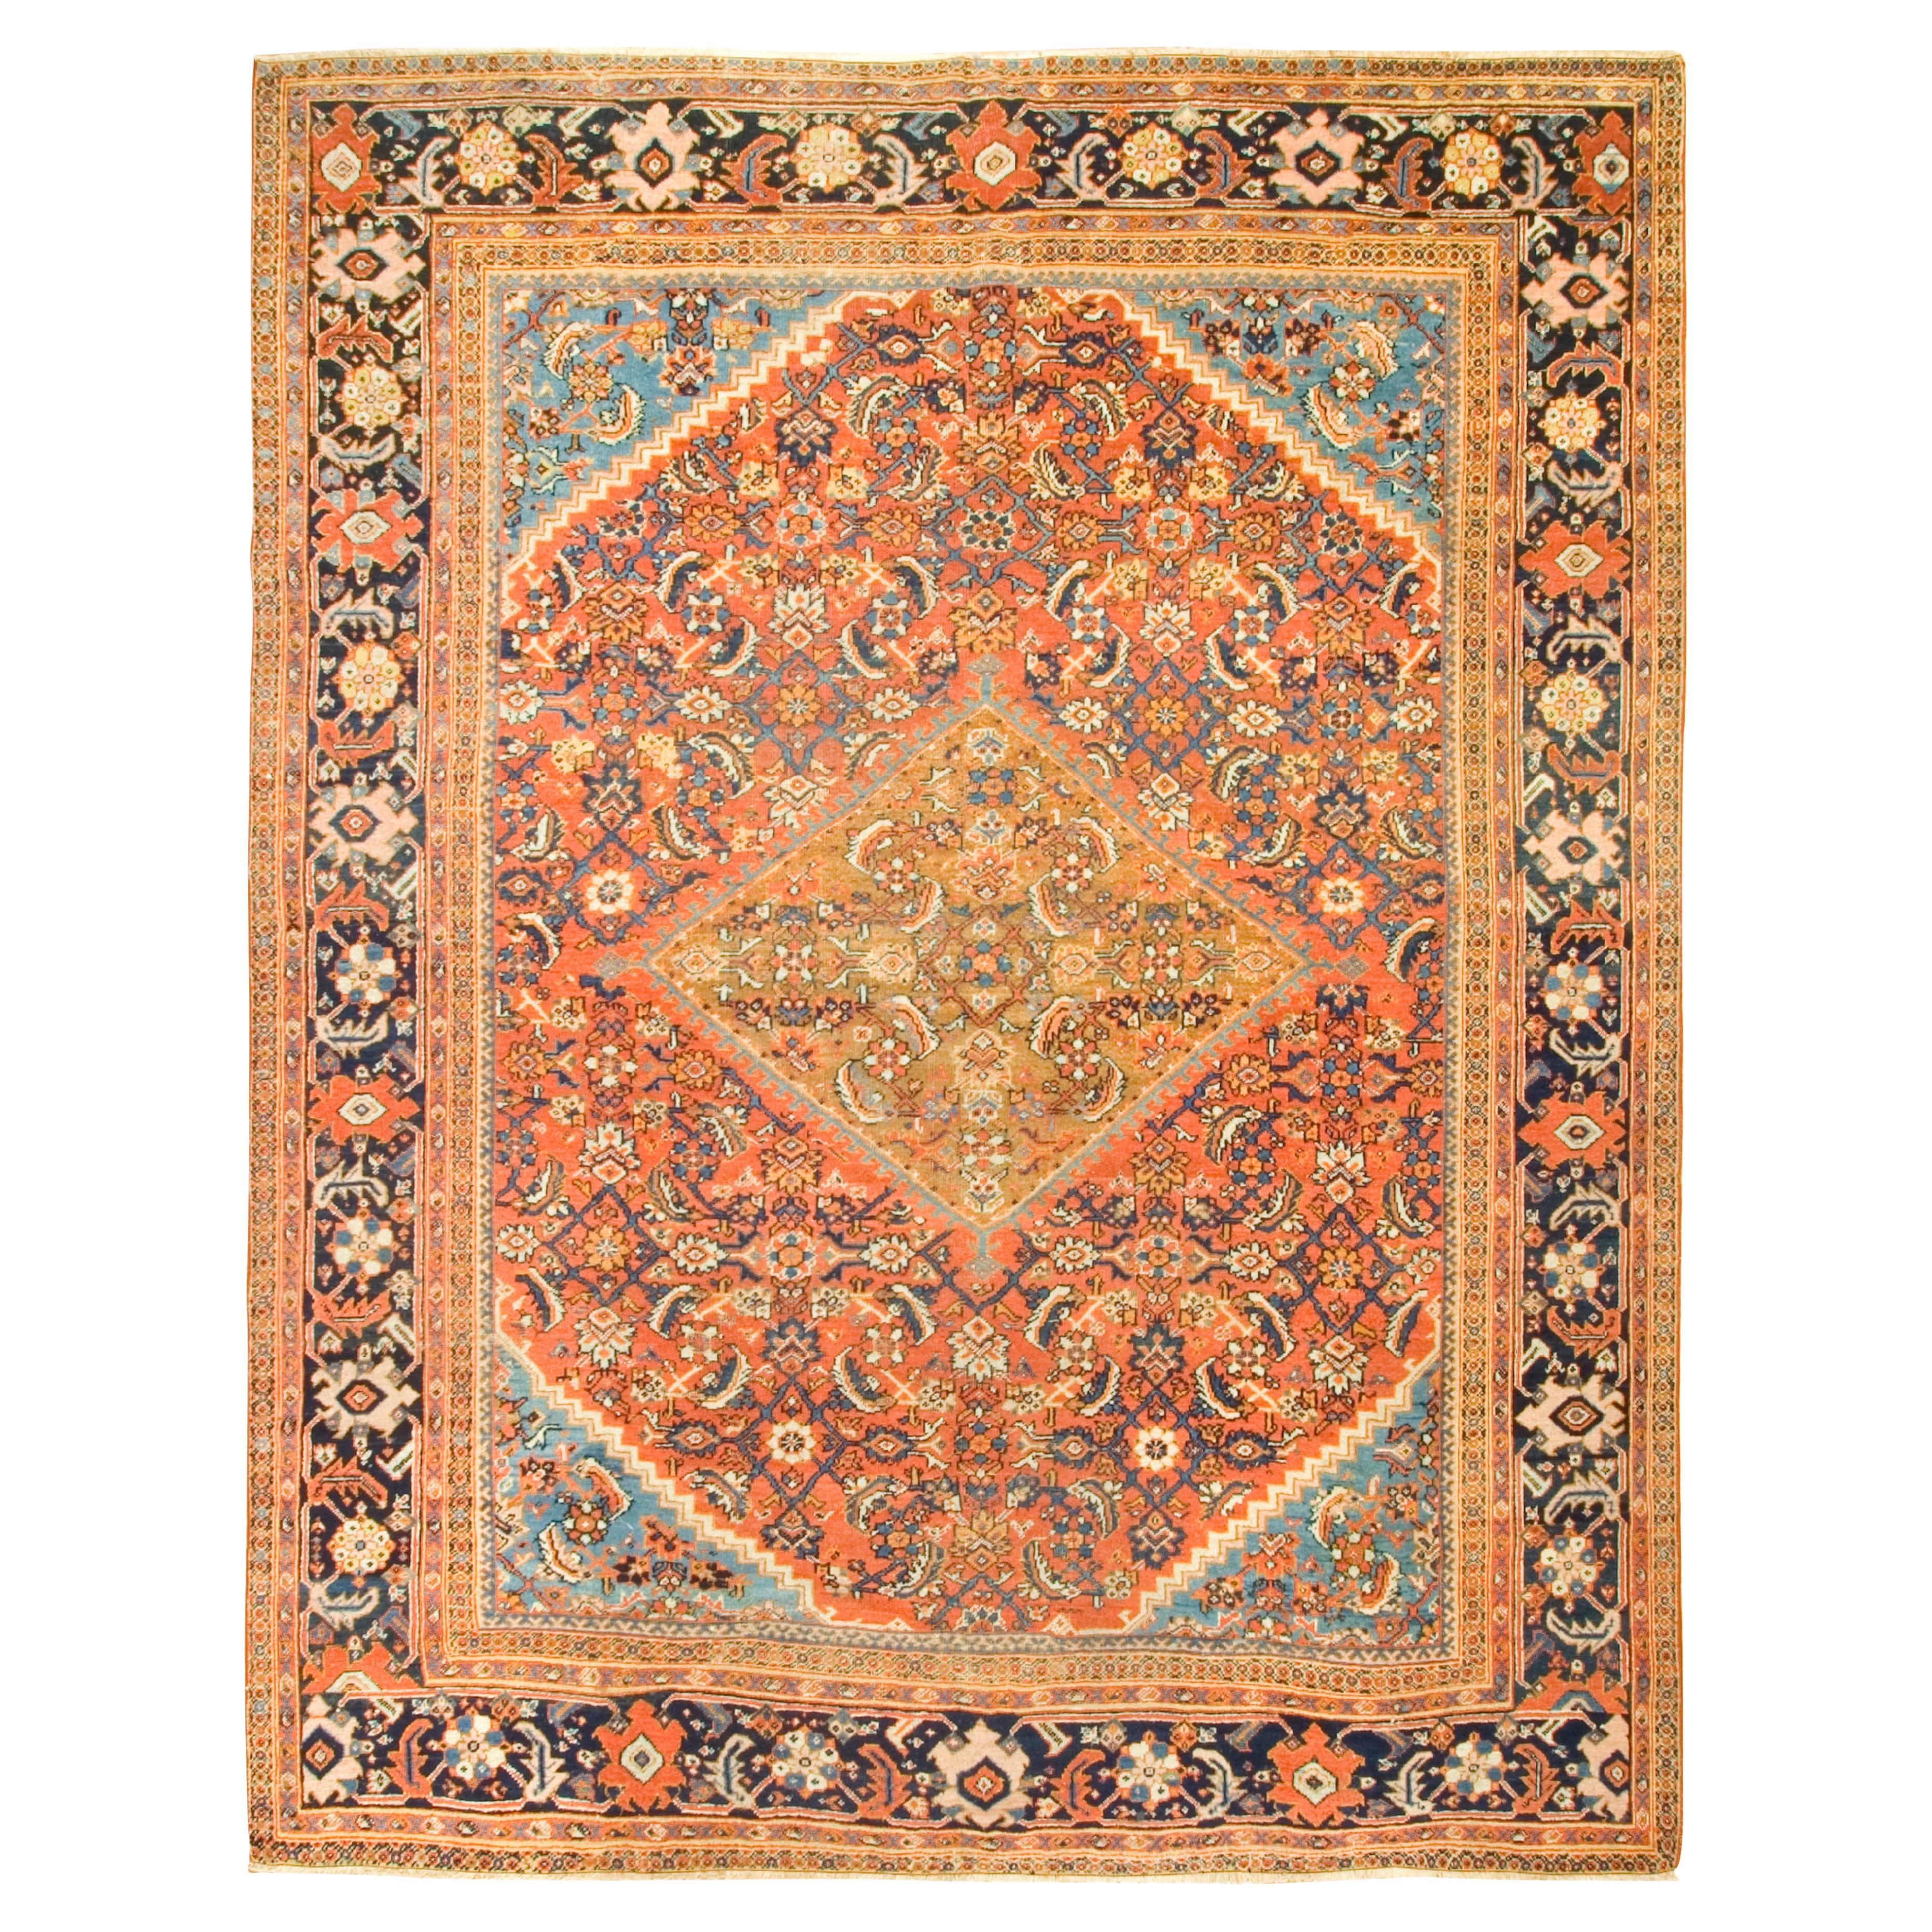 Antique Persian Sultanabad Rug Carpet, circa 1900 9' x 11'